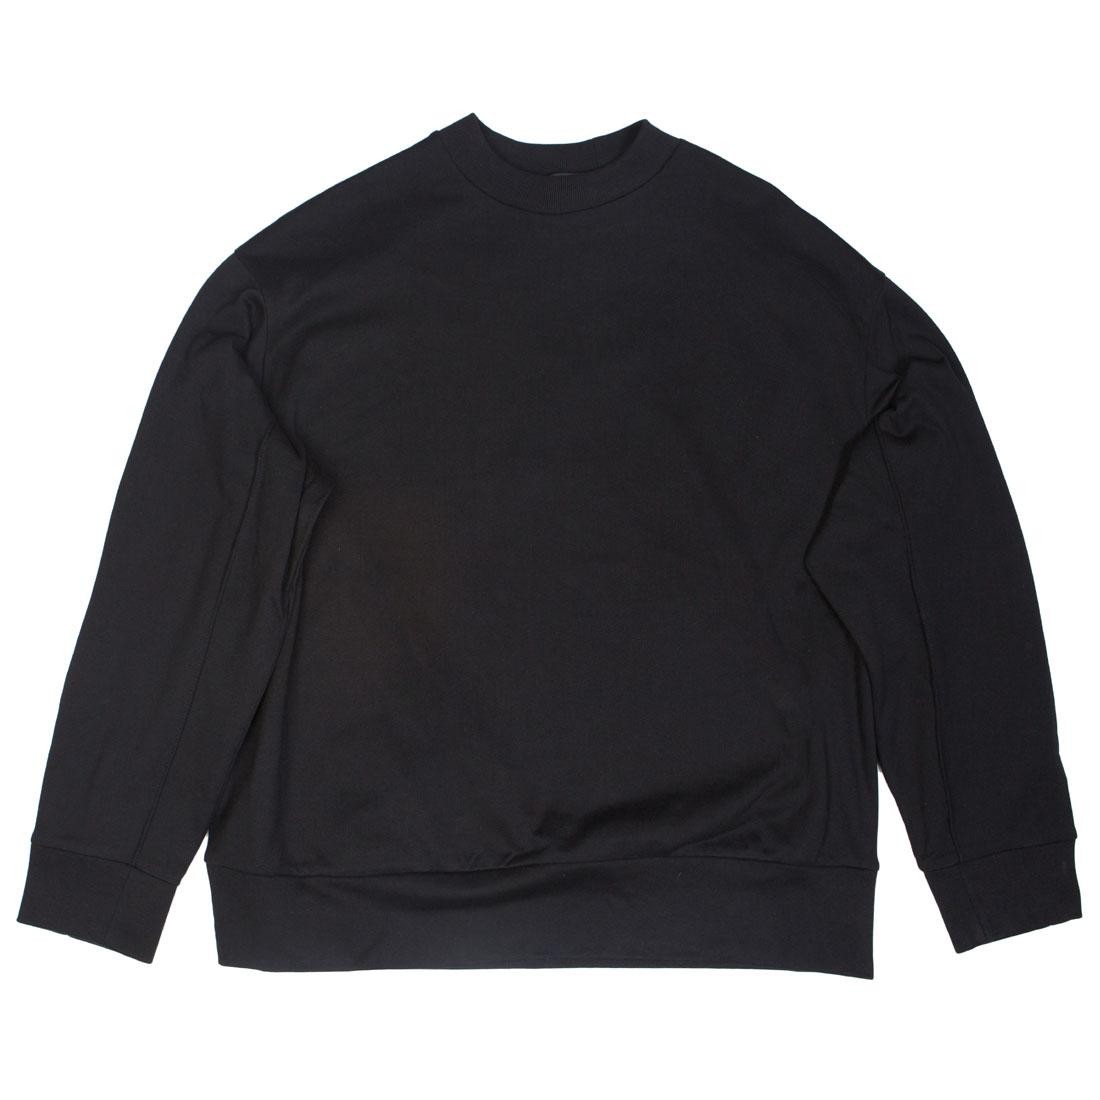 Adidas Y-3 Men Signature Graphic Crew Sweater black